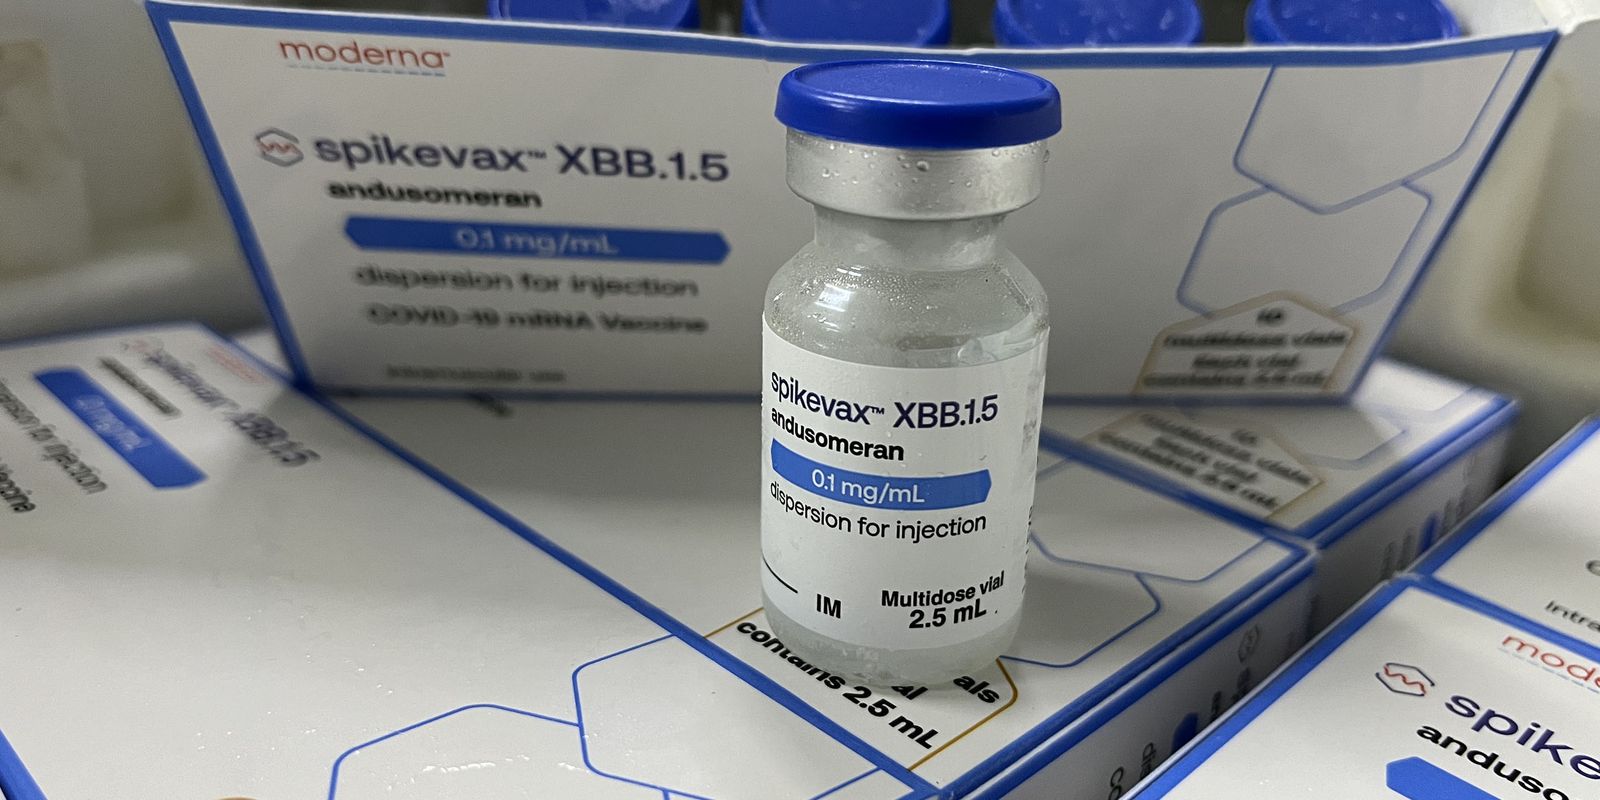 Vacina SpikeVax está disponível desde maio para grupos prioritários